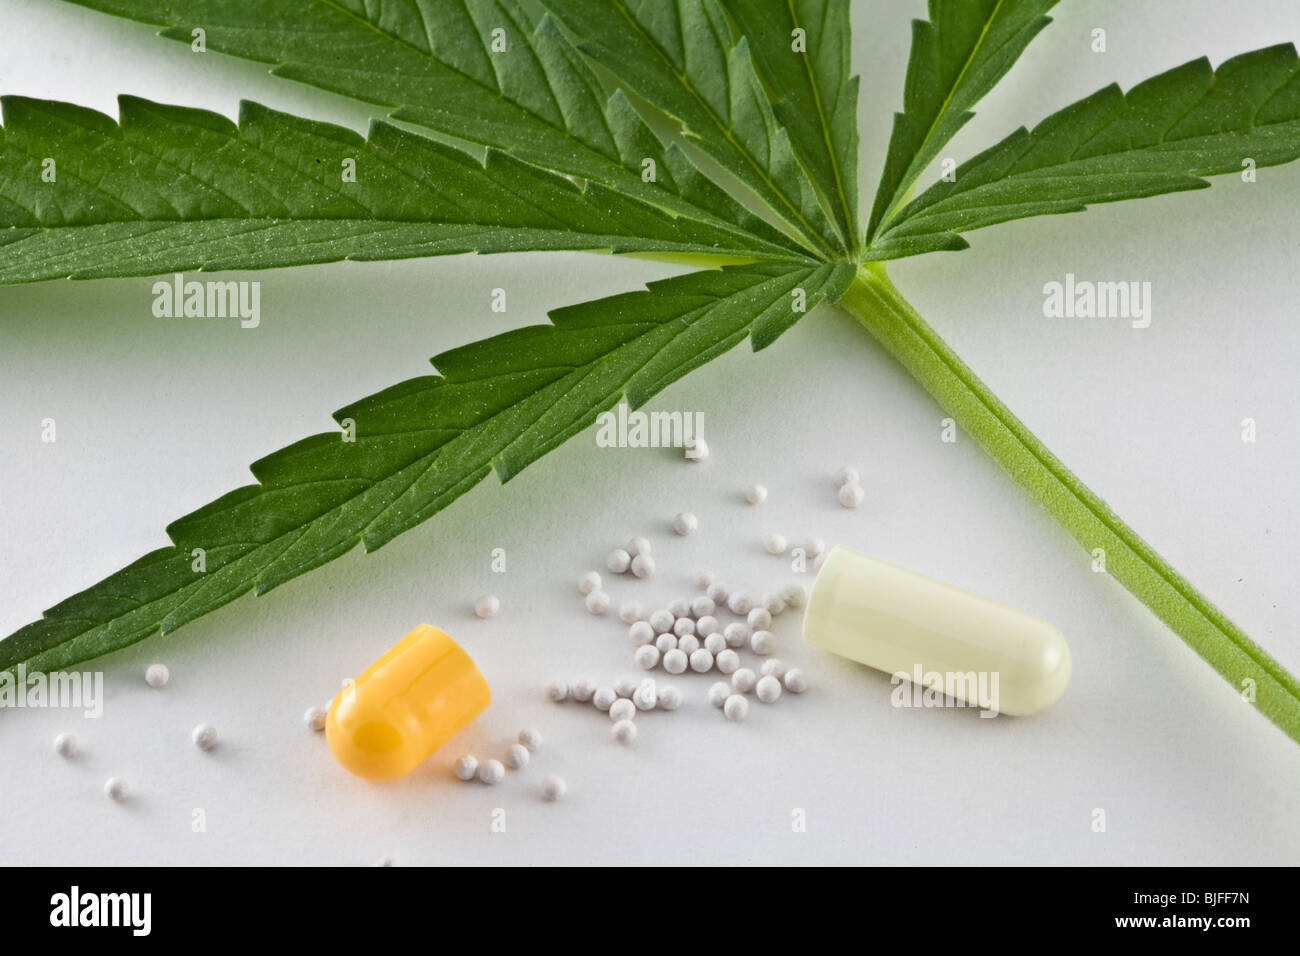 Marihuana-Blatt zusammen mit einer geöffneten Kapsel von gelber Farbe, isoliert in weißen fund(depth), Konzept der Alternative med (in der Nähe) Stockfoto